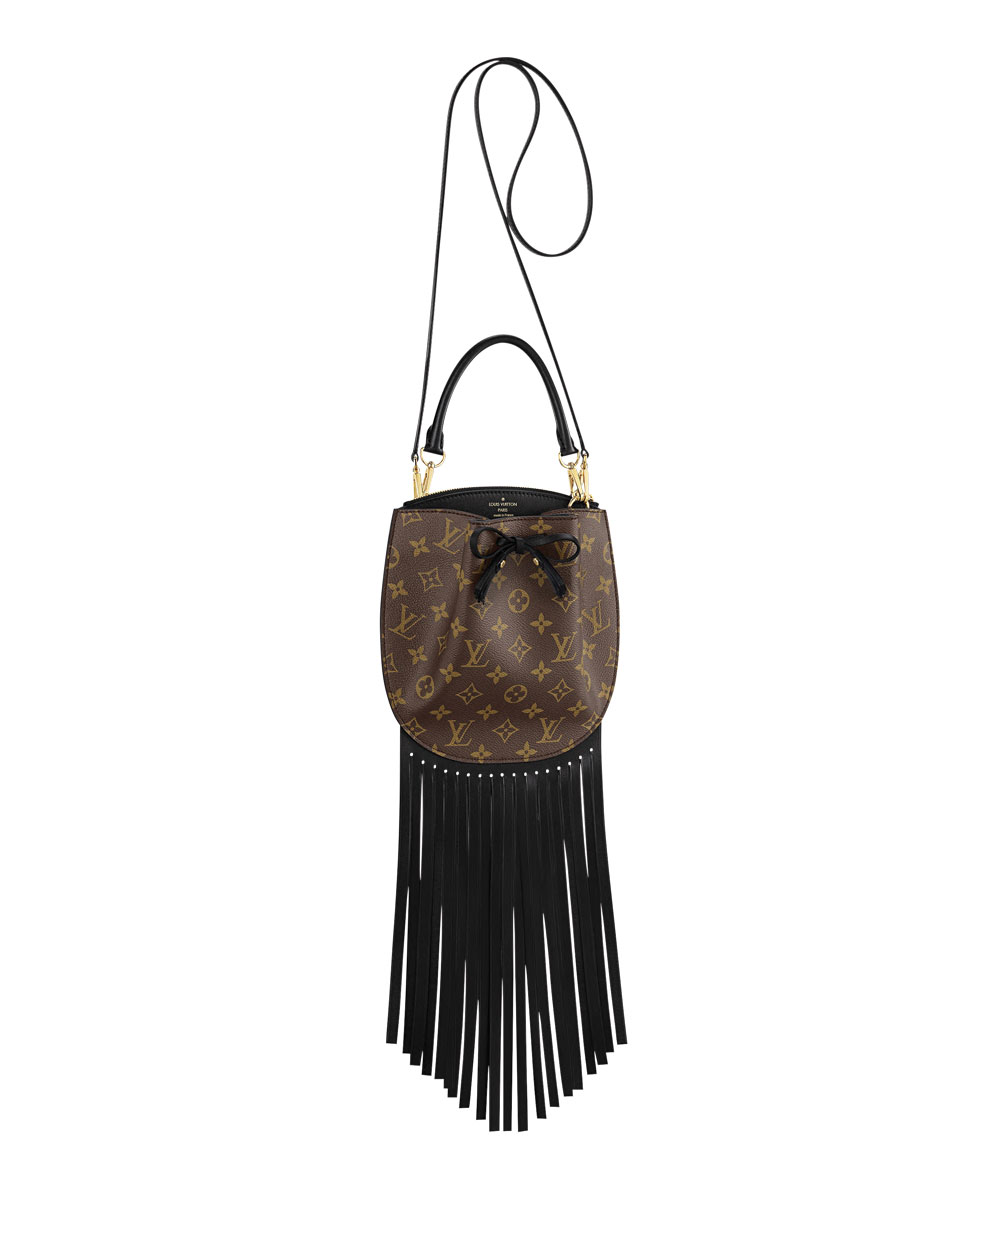 Louis Vuitton bag, $3700